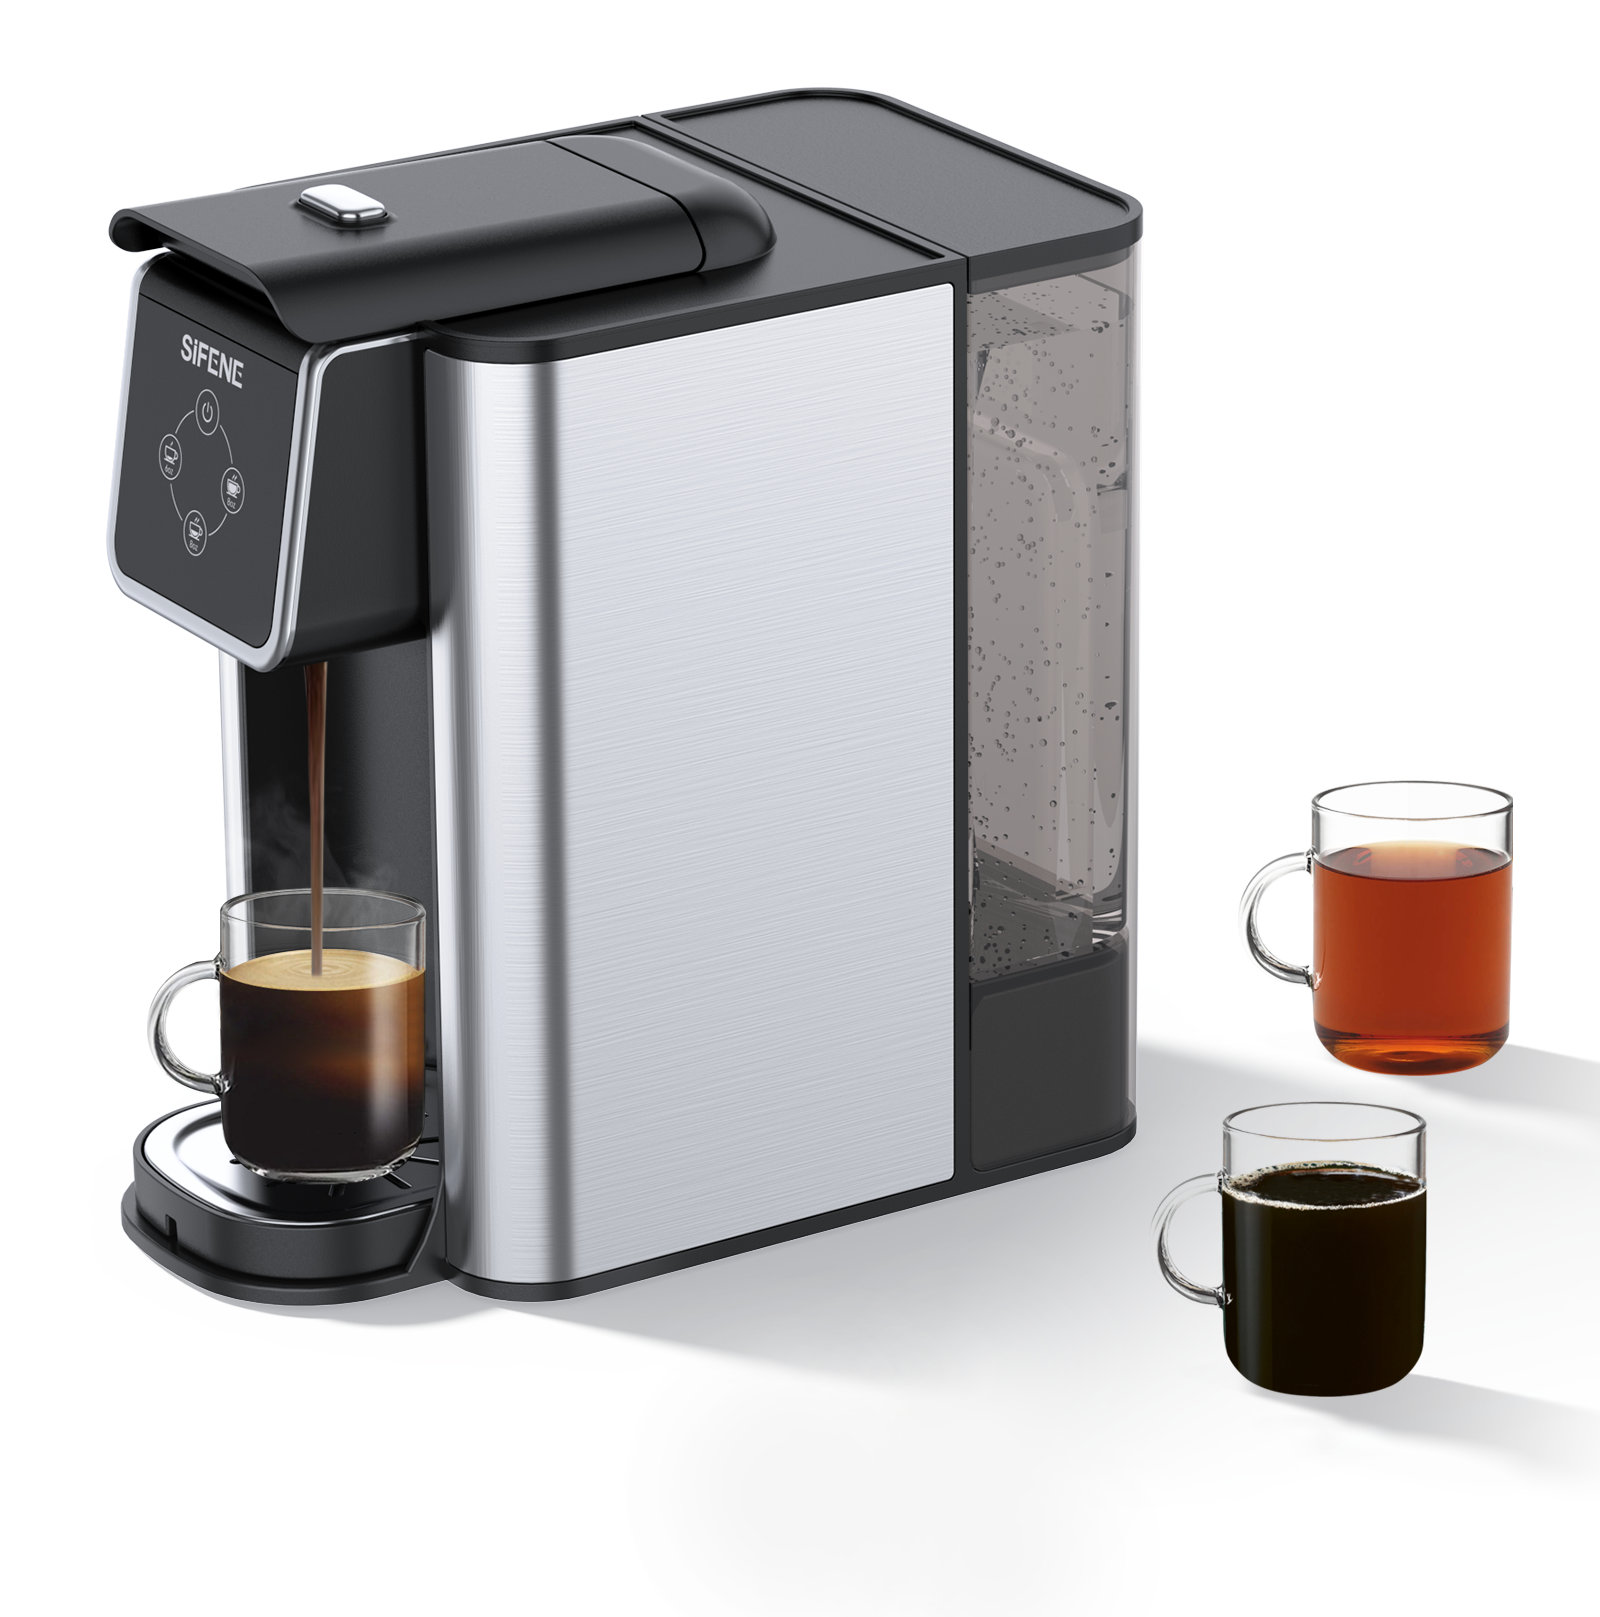 https://assets.wfcdn.com/im/45192602/compr-r85/2441/244155944/versatile-3-in-1-sifene-coffee-machine-k-cup-ground-coffee-tea-brewer-with-50oz-reservoir.jpg